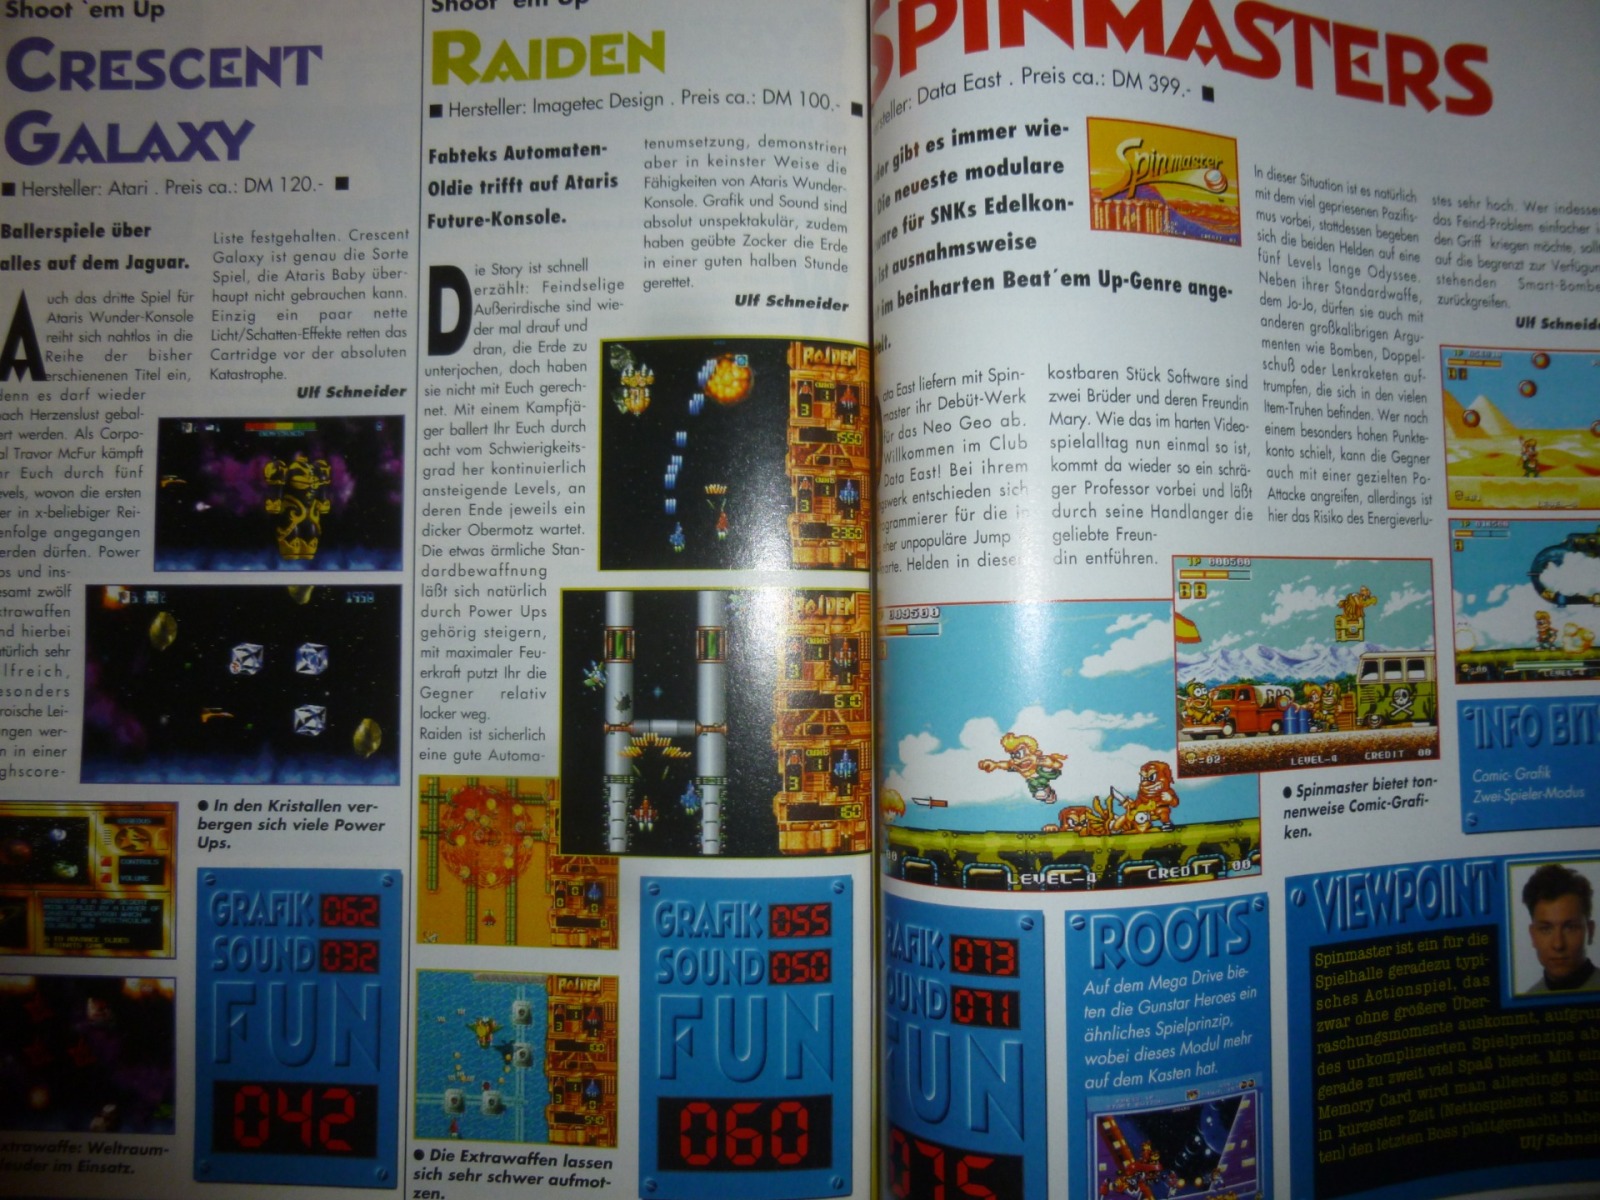 Play Time - Das Computer- und Videospiele-Magazin - Ausgabe 4/94 1994 34